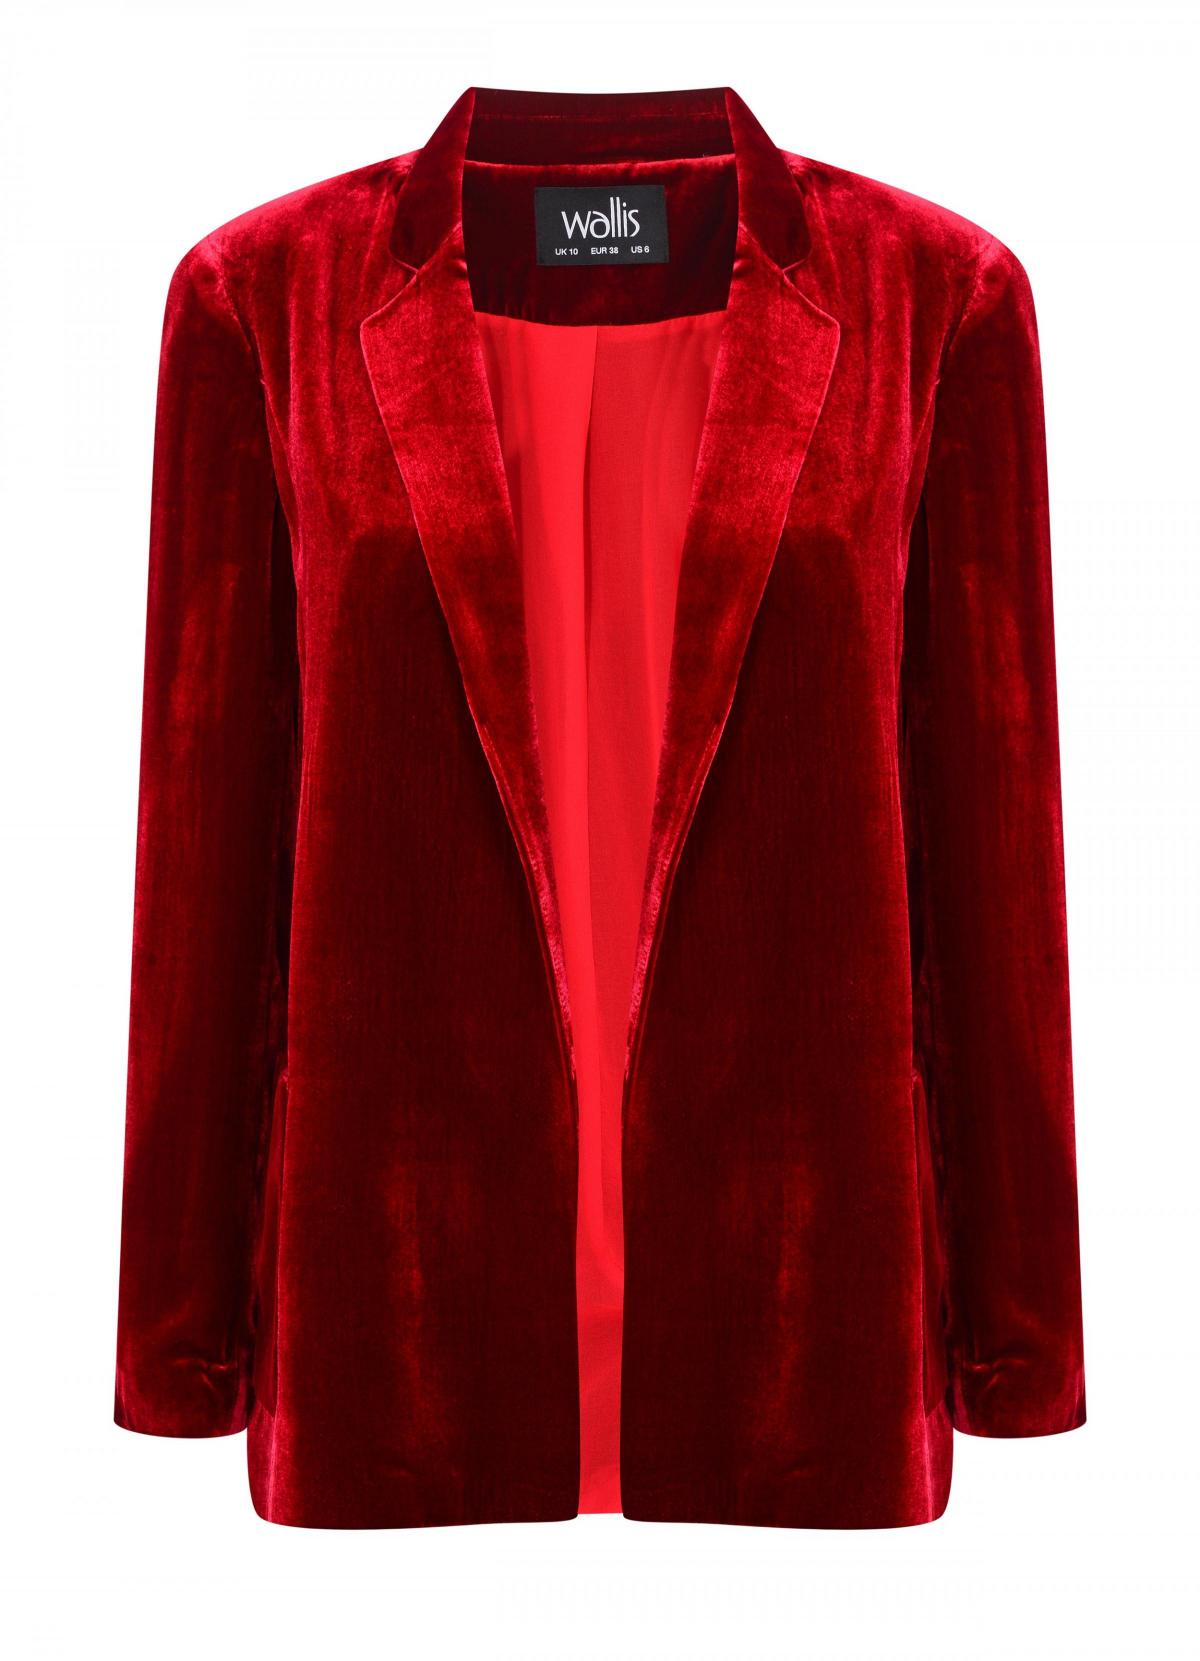 Wallis, Red Velvet Suit Jacket, £60